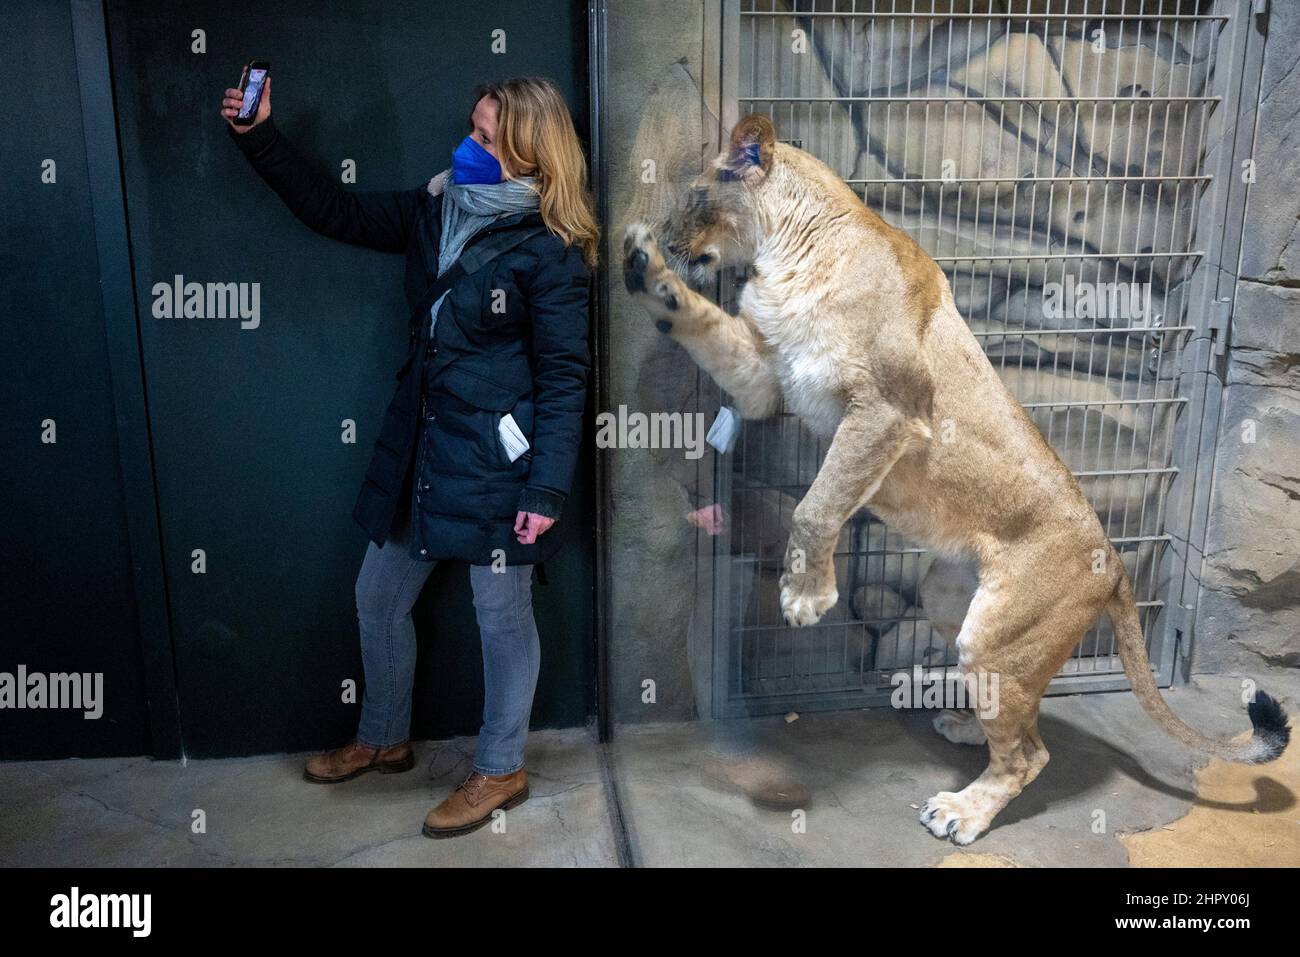 Berlino, Germania. 24th Feb 2022. Un giornalista prende un selfie con un leone nel recinto del leone. Dopo diversi anni di costruzione, la casa predatrice dello Zoo di Berlino riapre il 25 febbraio. Credit: Christophe Gateau/dpa/Alamy Live News Foto Stock